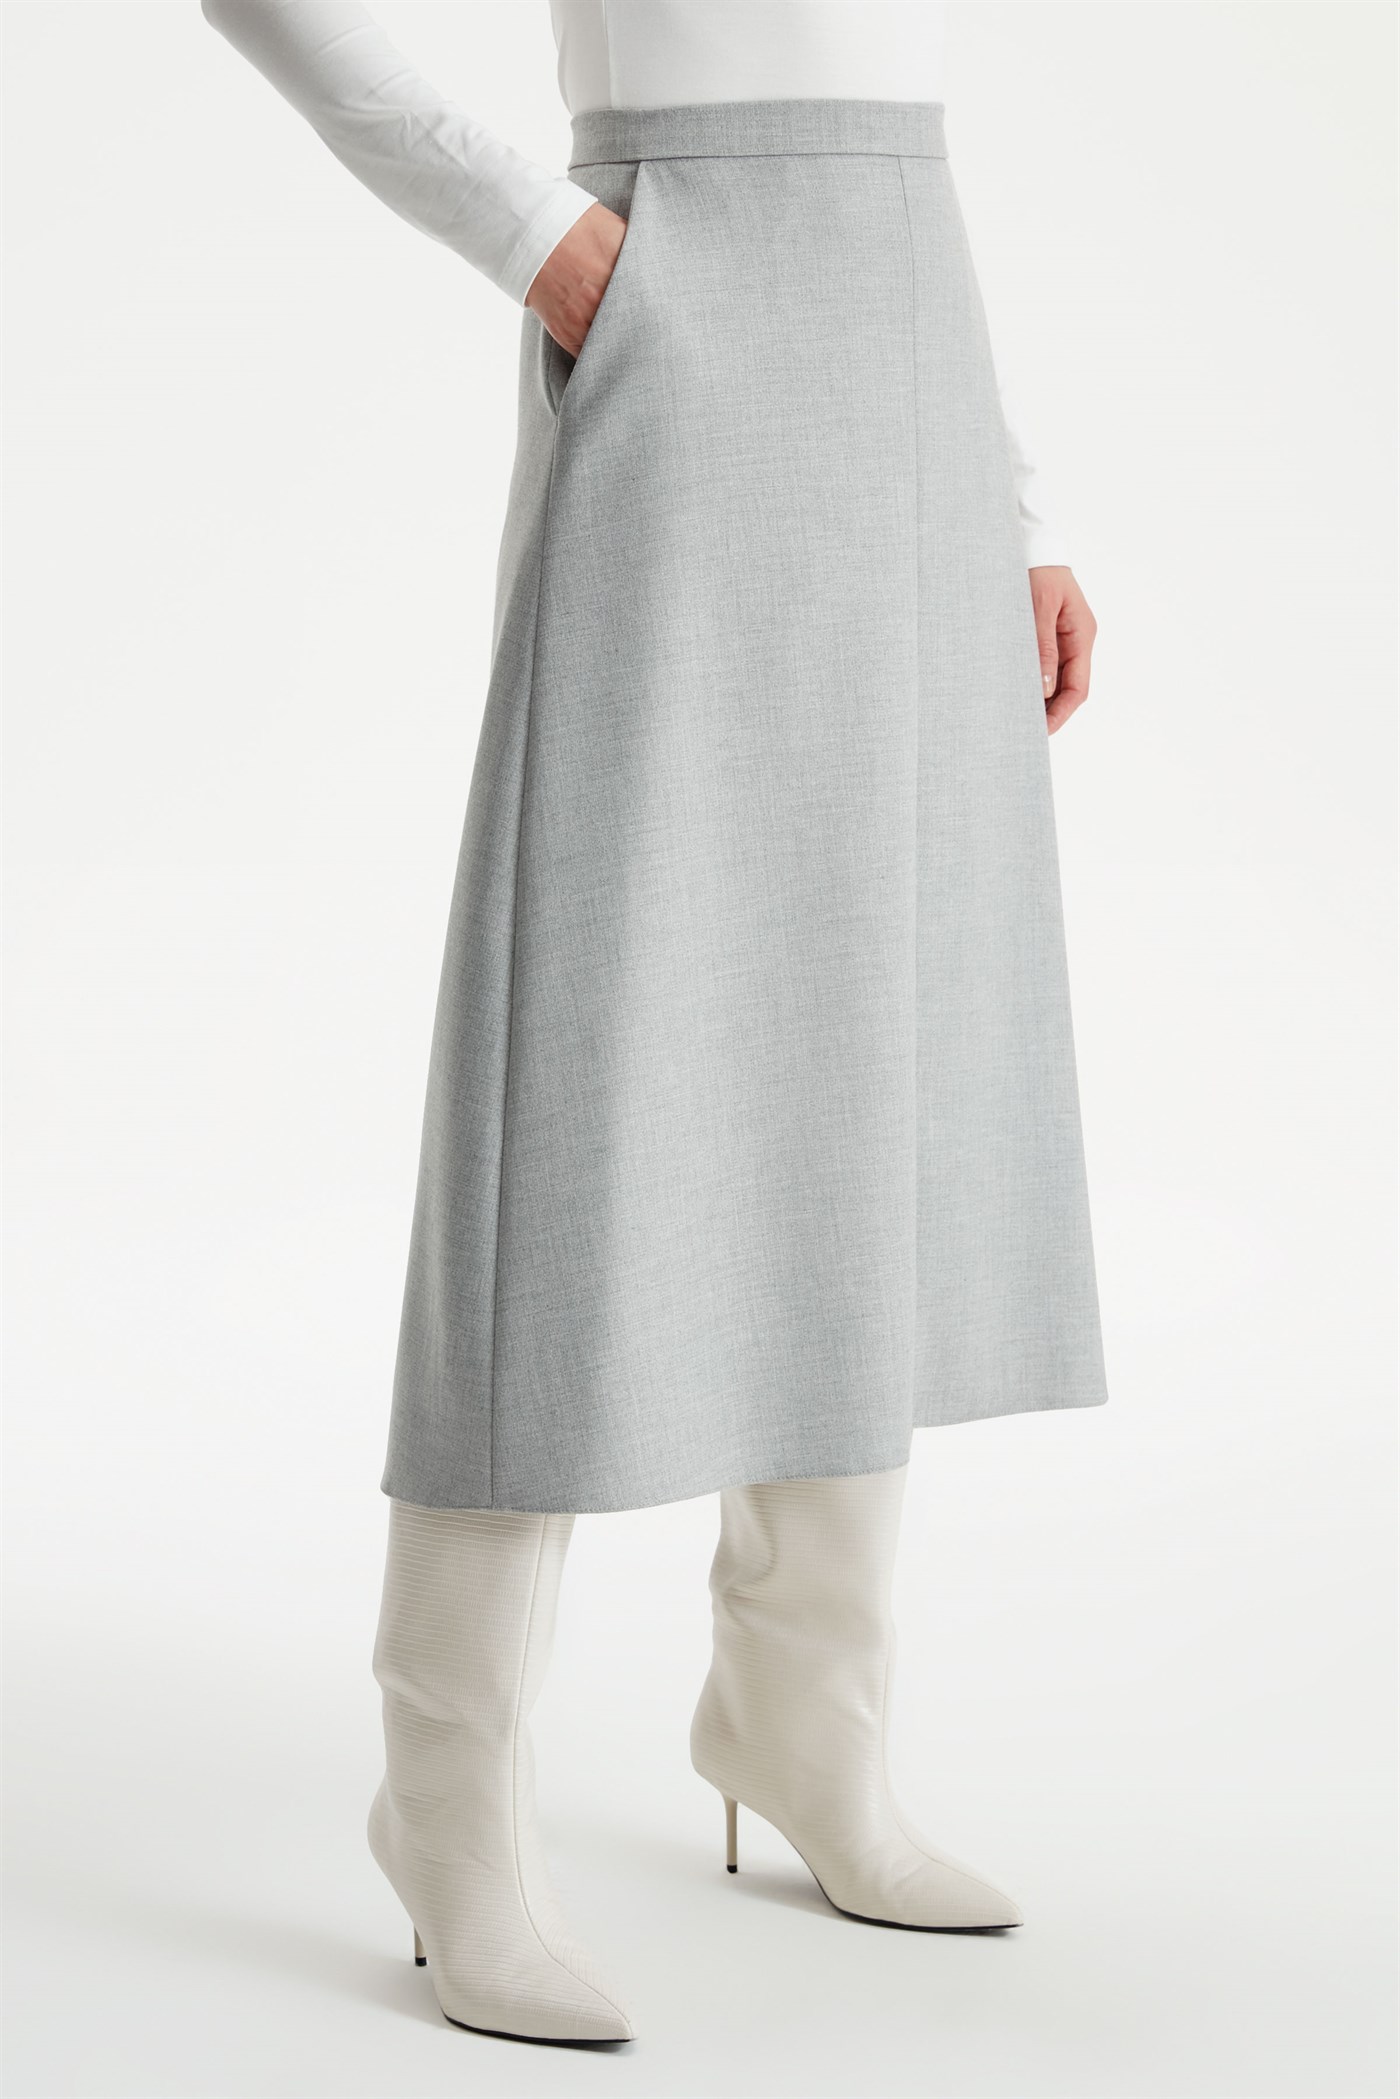 High Waist Bell Cut Skirt - Gray